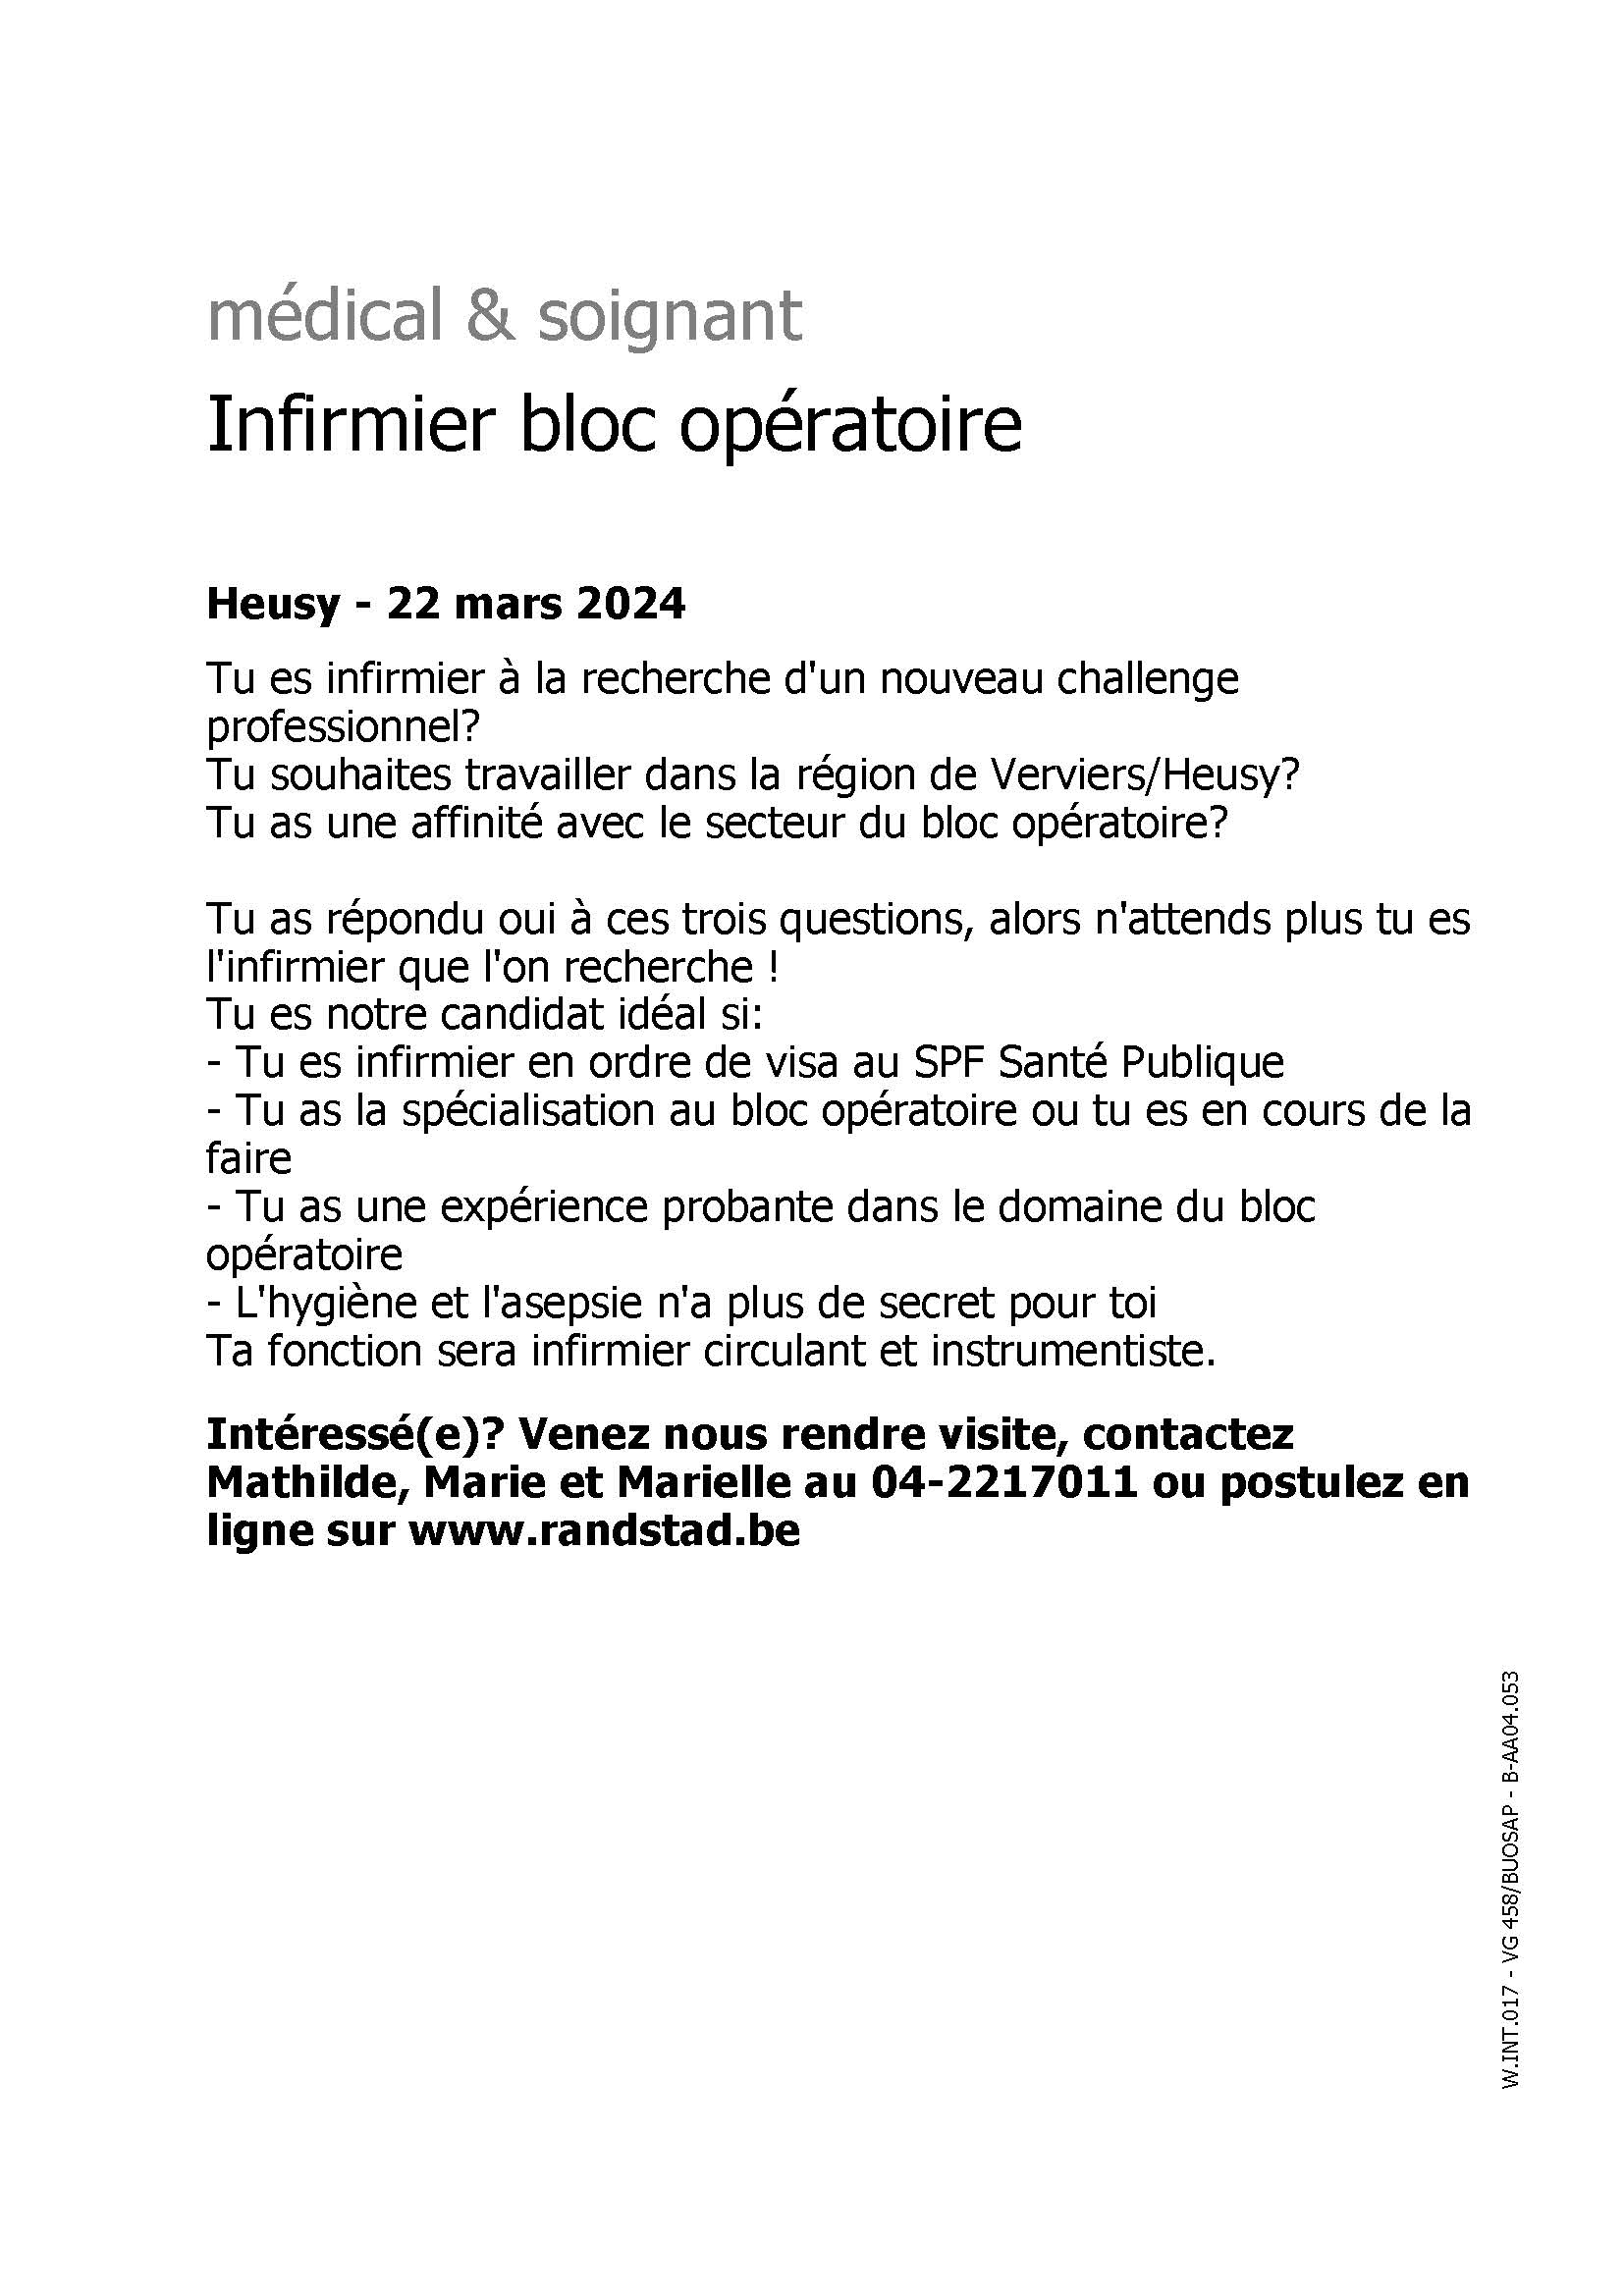 Randstad Interim recherche des (h/f) infimiers de bloc opératoire pour la région de Verviers/Heusy, la région de Namur, la région de Liège et la région de Huy